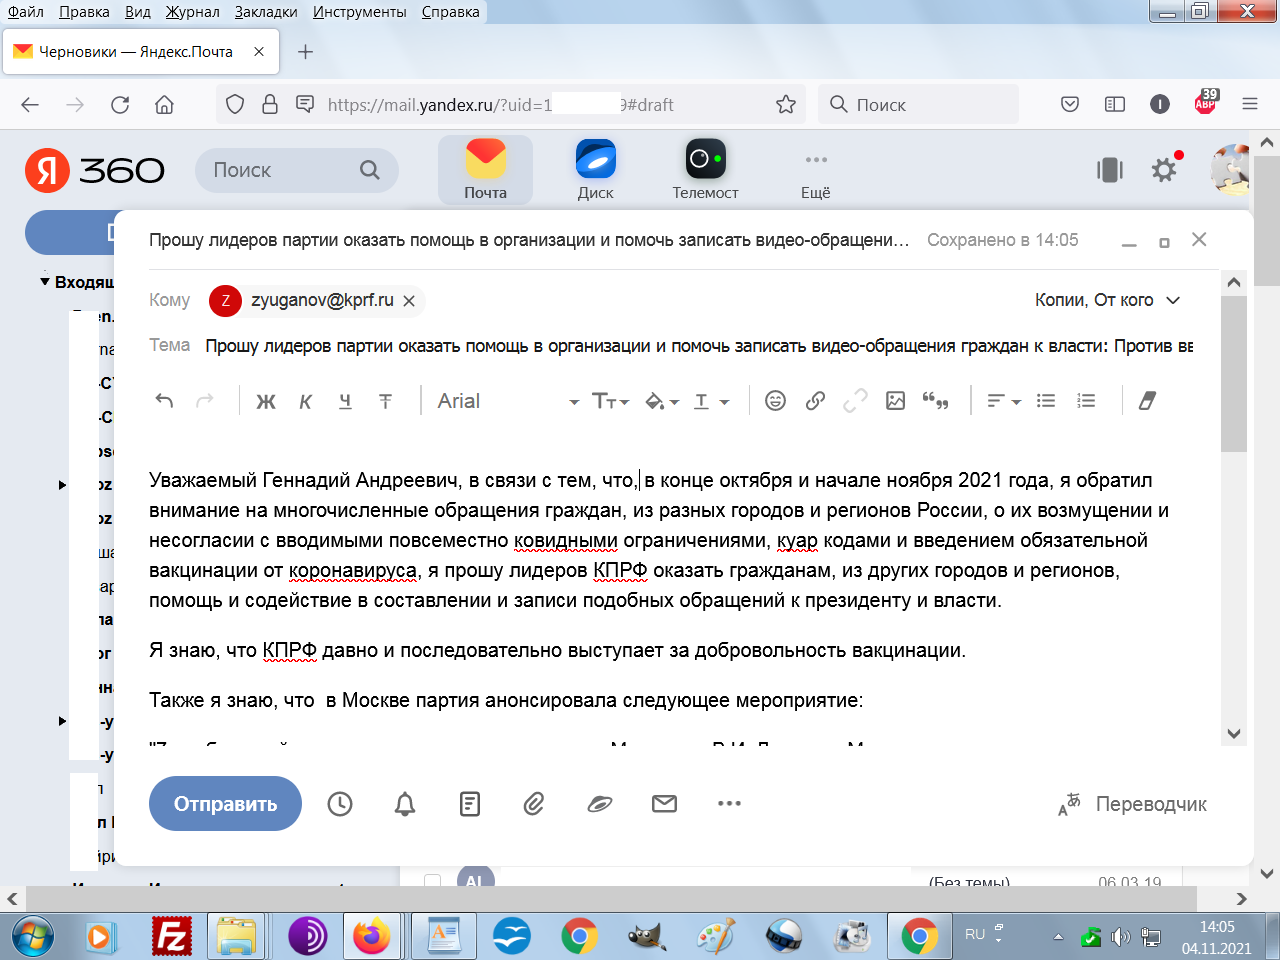 Моё письмо к Зюганову с предложением записать видеообращение граждан против куар кодов, сегрегации и обязательной вакцинации